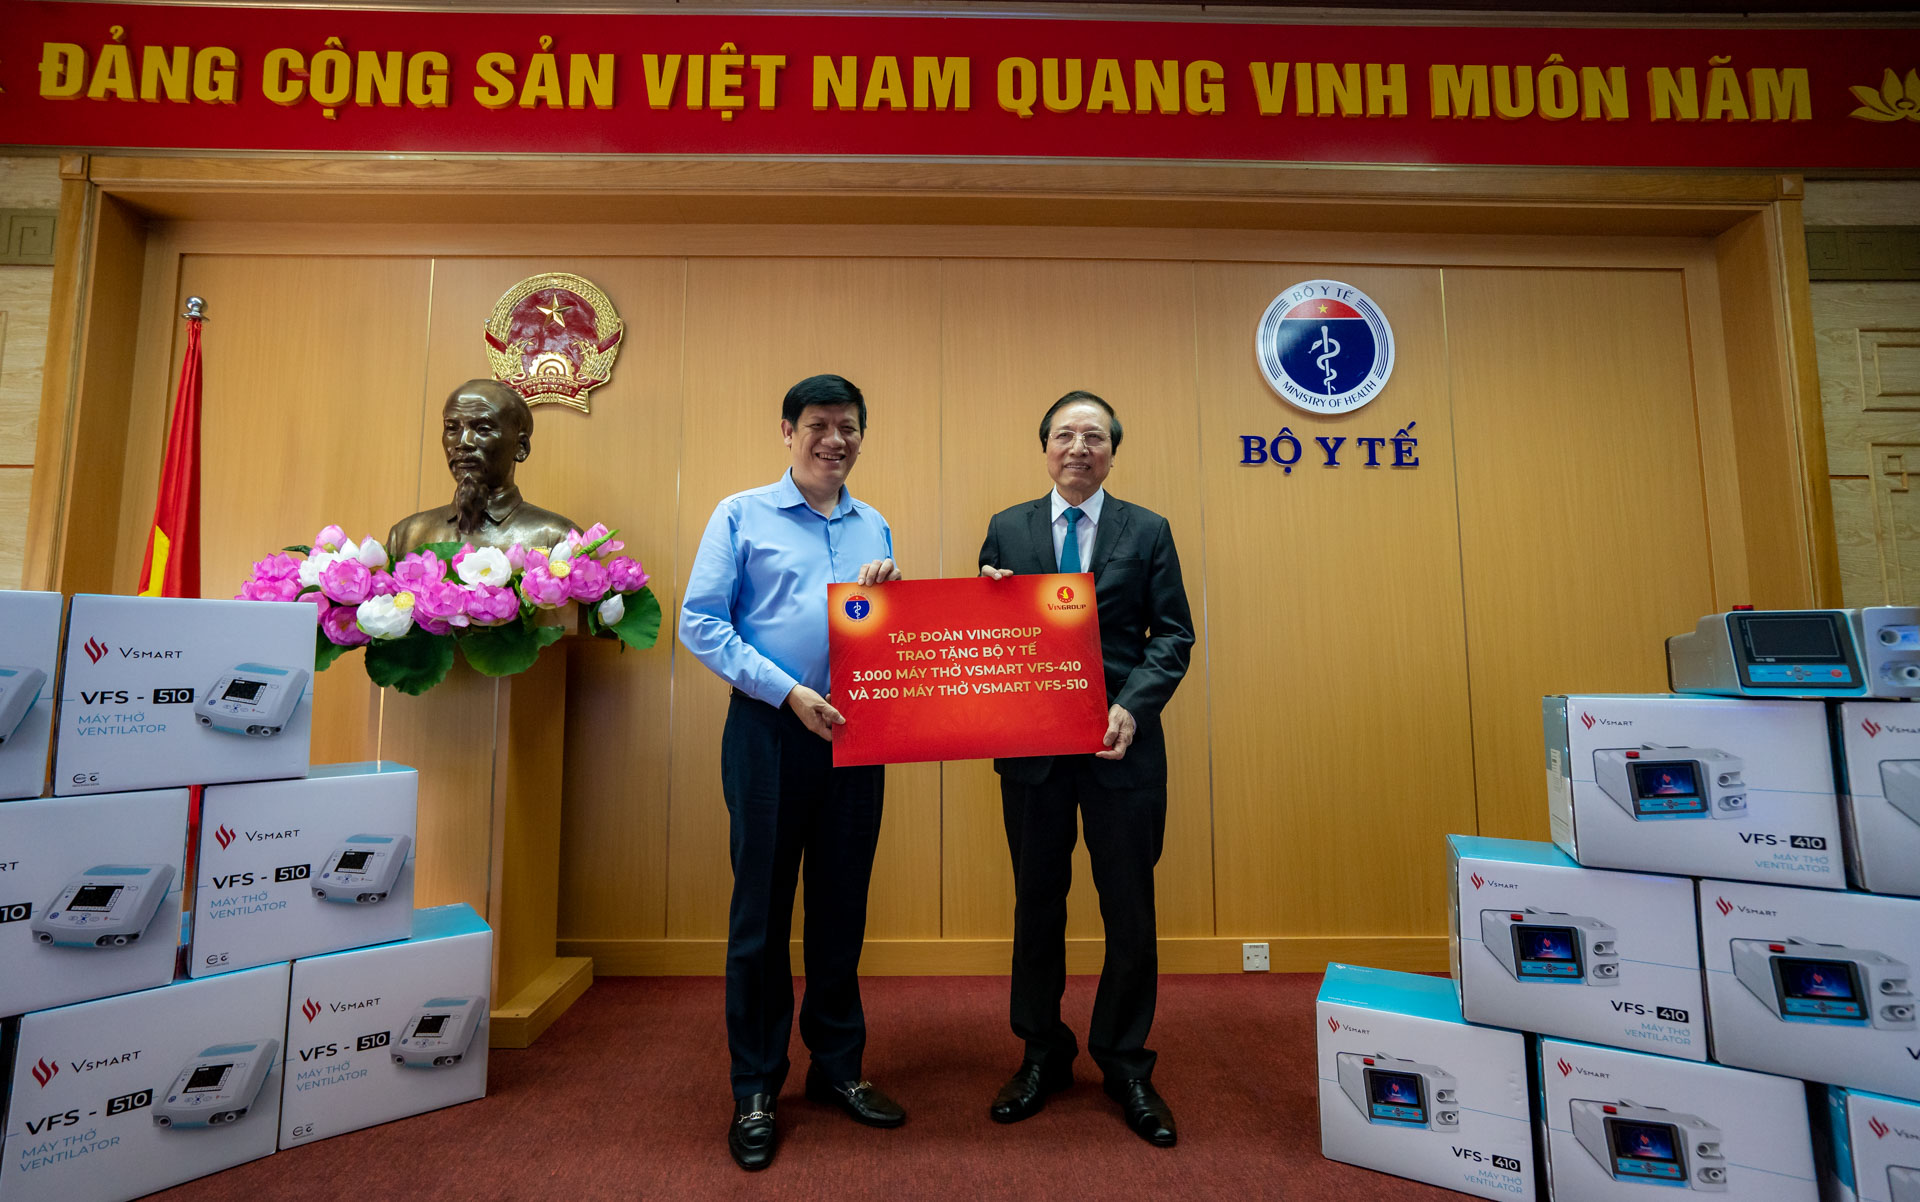 GS Đỗ Tất Cường, Phó Tổng Giám đốc Hệ thống Y tế Vinmec, đại diện Tập đoàn Vingroup trao tặng máy thở cho quyền Bộ trưởng Bộ Y tế Nguyễn Thanh Long.